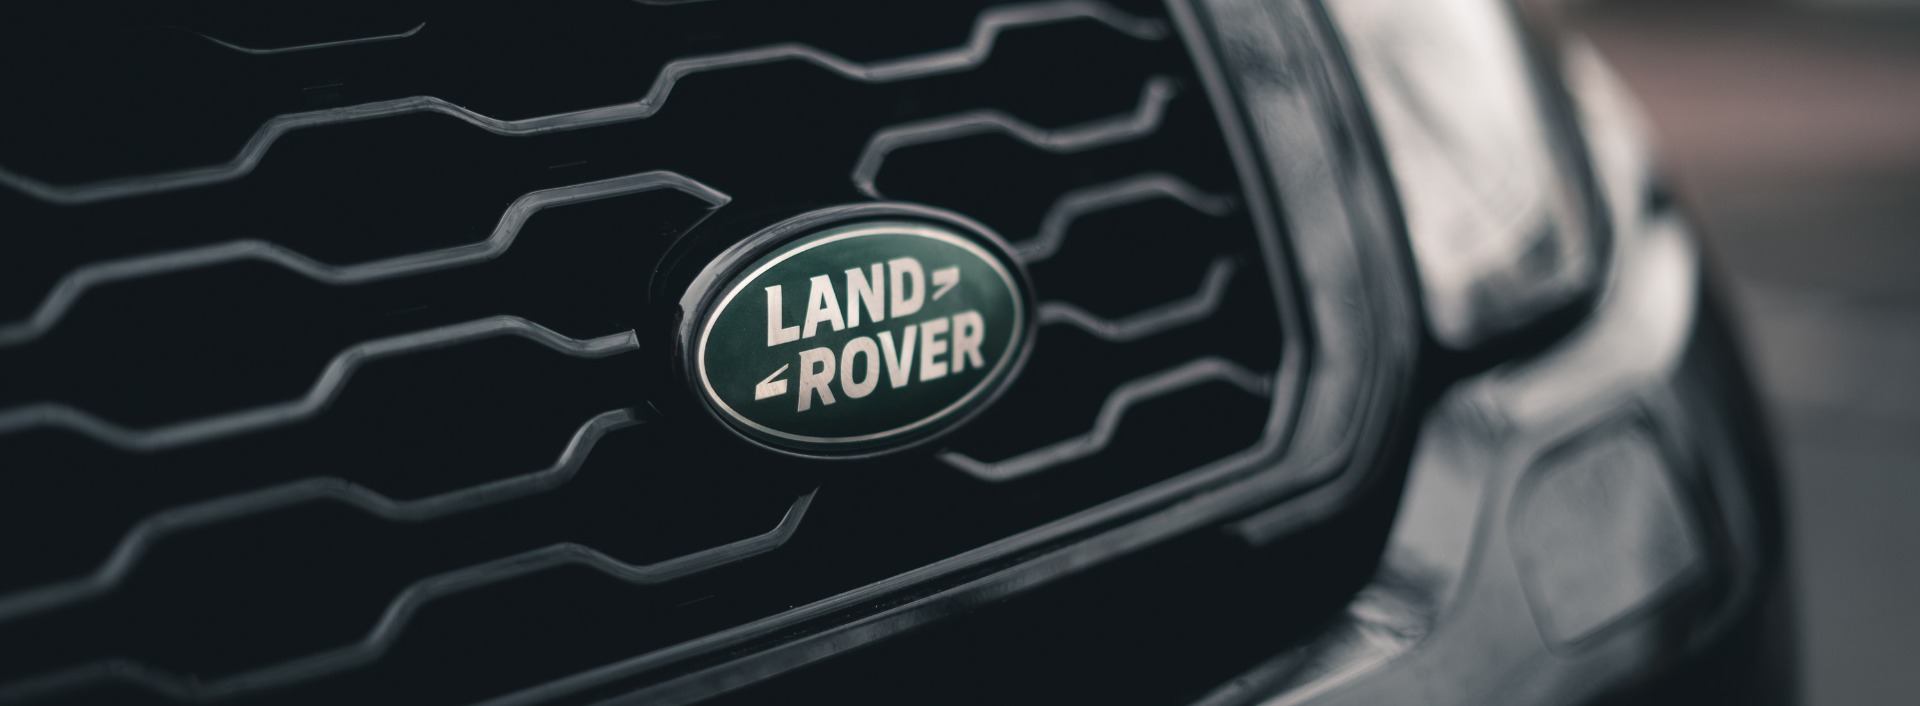 Land Rover A FAIR REPUTATION?